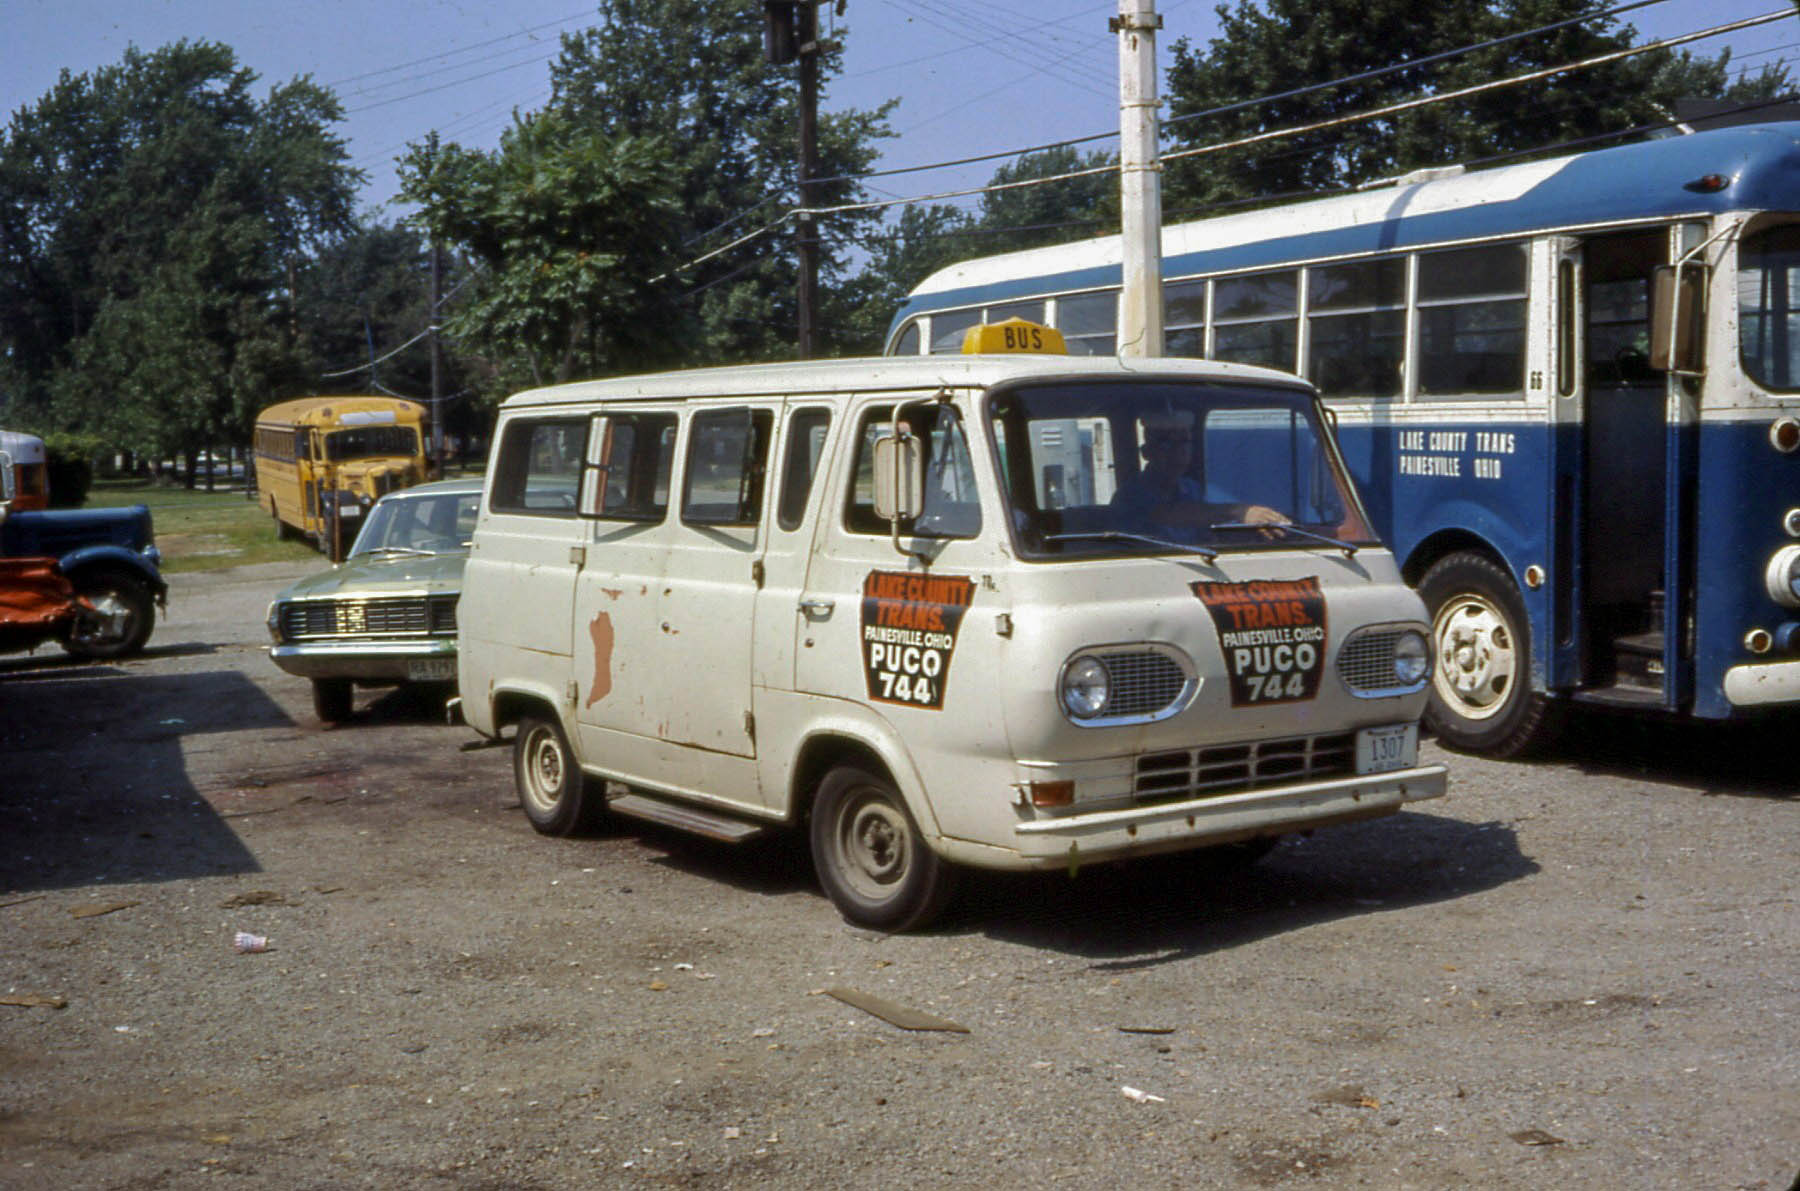 1969. Автобусы на дорогах Пенсильвании 